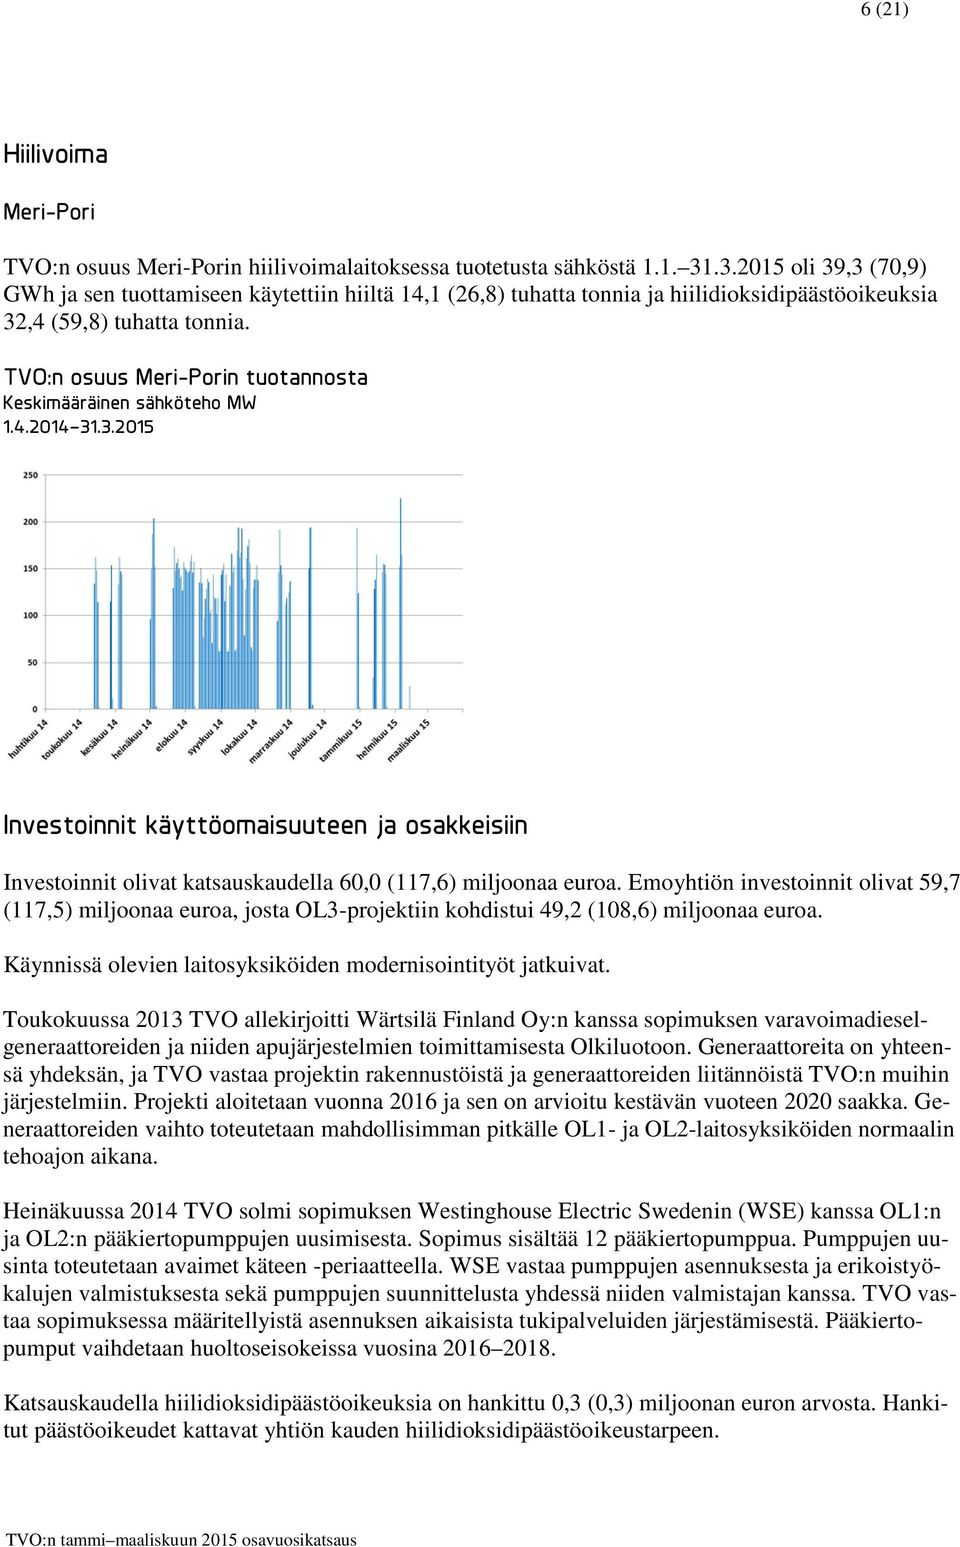 TVO:n osuus Meri-Porin tuotannosta Keskimääräinen sähköteho MW 1.4.2014 31.3.2015 Investoinnit käyttöomaisuuteen ja osakkeisiin Investoinnit olivat katsauskaudella 60,0 (117,6) miljoonaa euroa.